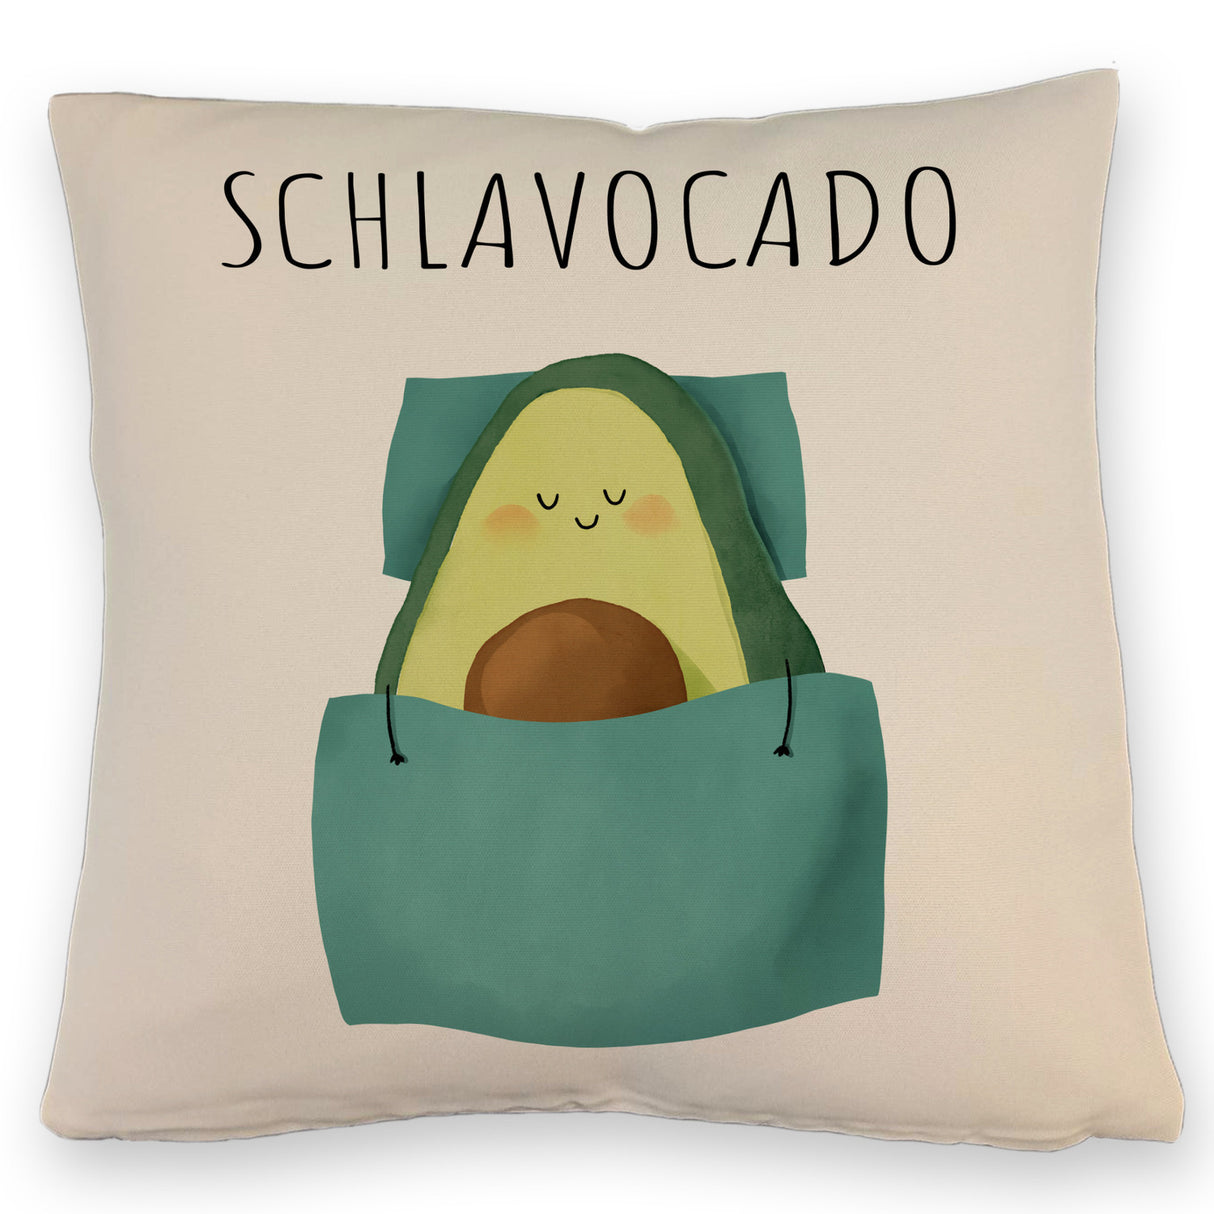 Schlafende Avocado Kissen mit Spruch Schlavocado